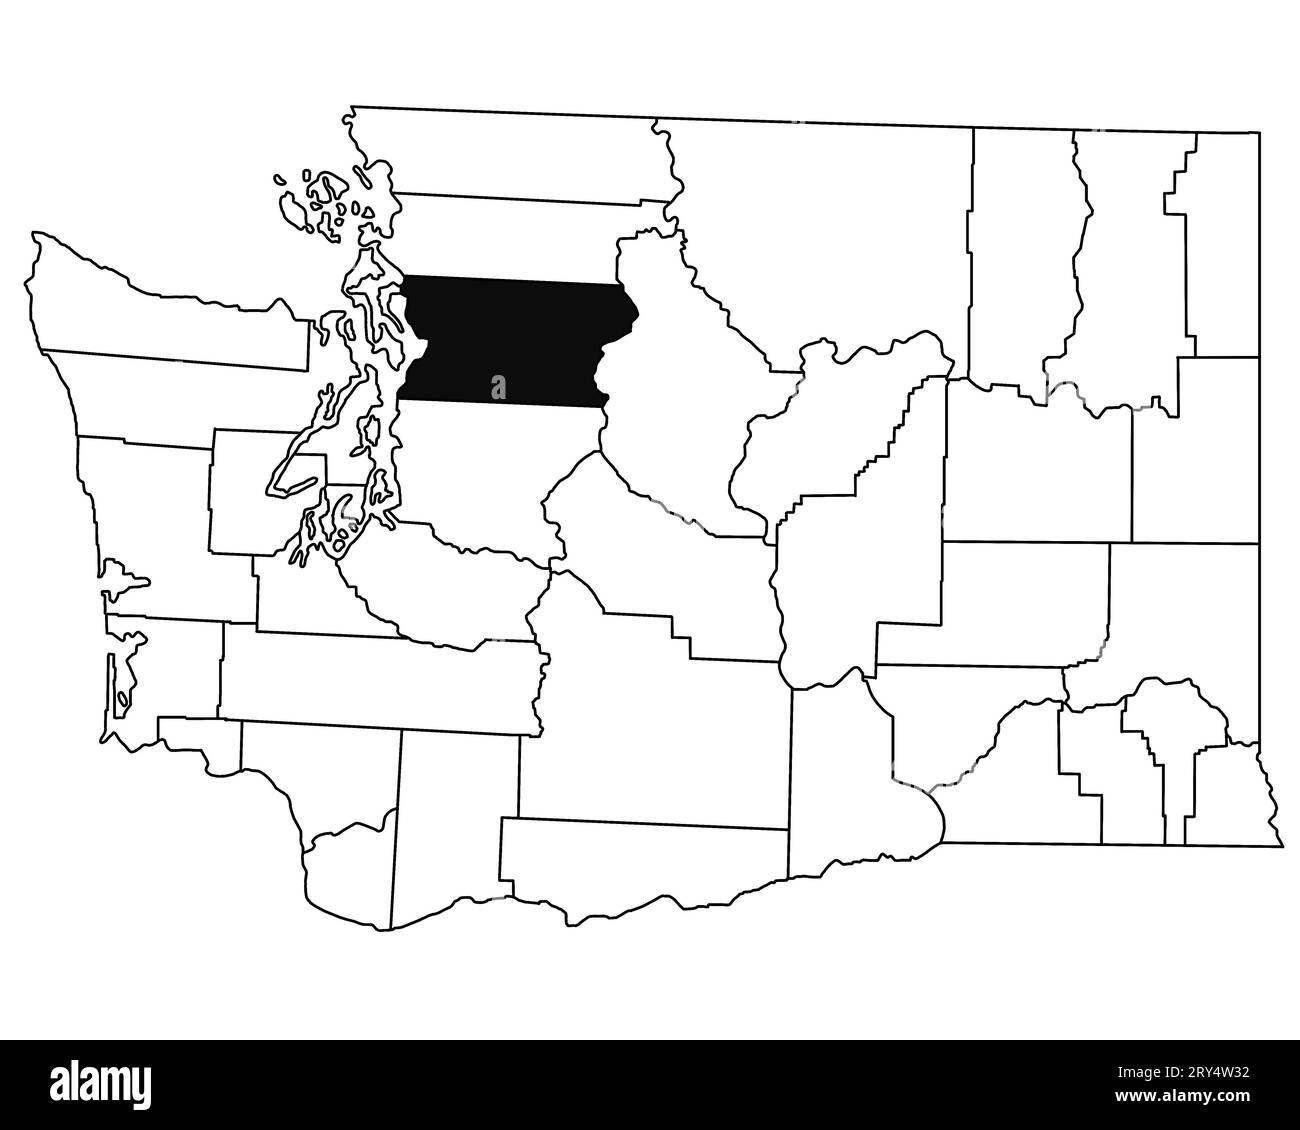 Carte du comté de Snohomish dans l'état de Washington DC sur fond blanc. Carte de Single County surlignée en noir sur la carte DE WASHINGTON. ÉTATS-UNIS, ÉTATS-UNIS Banque D'Images